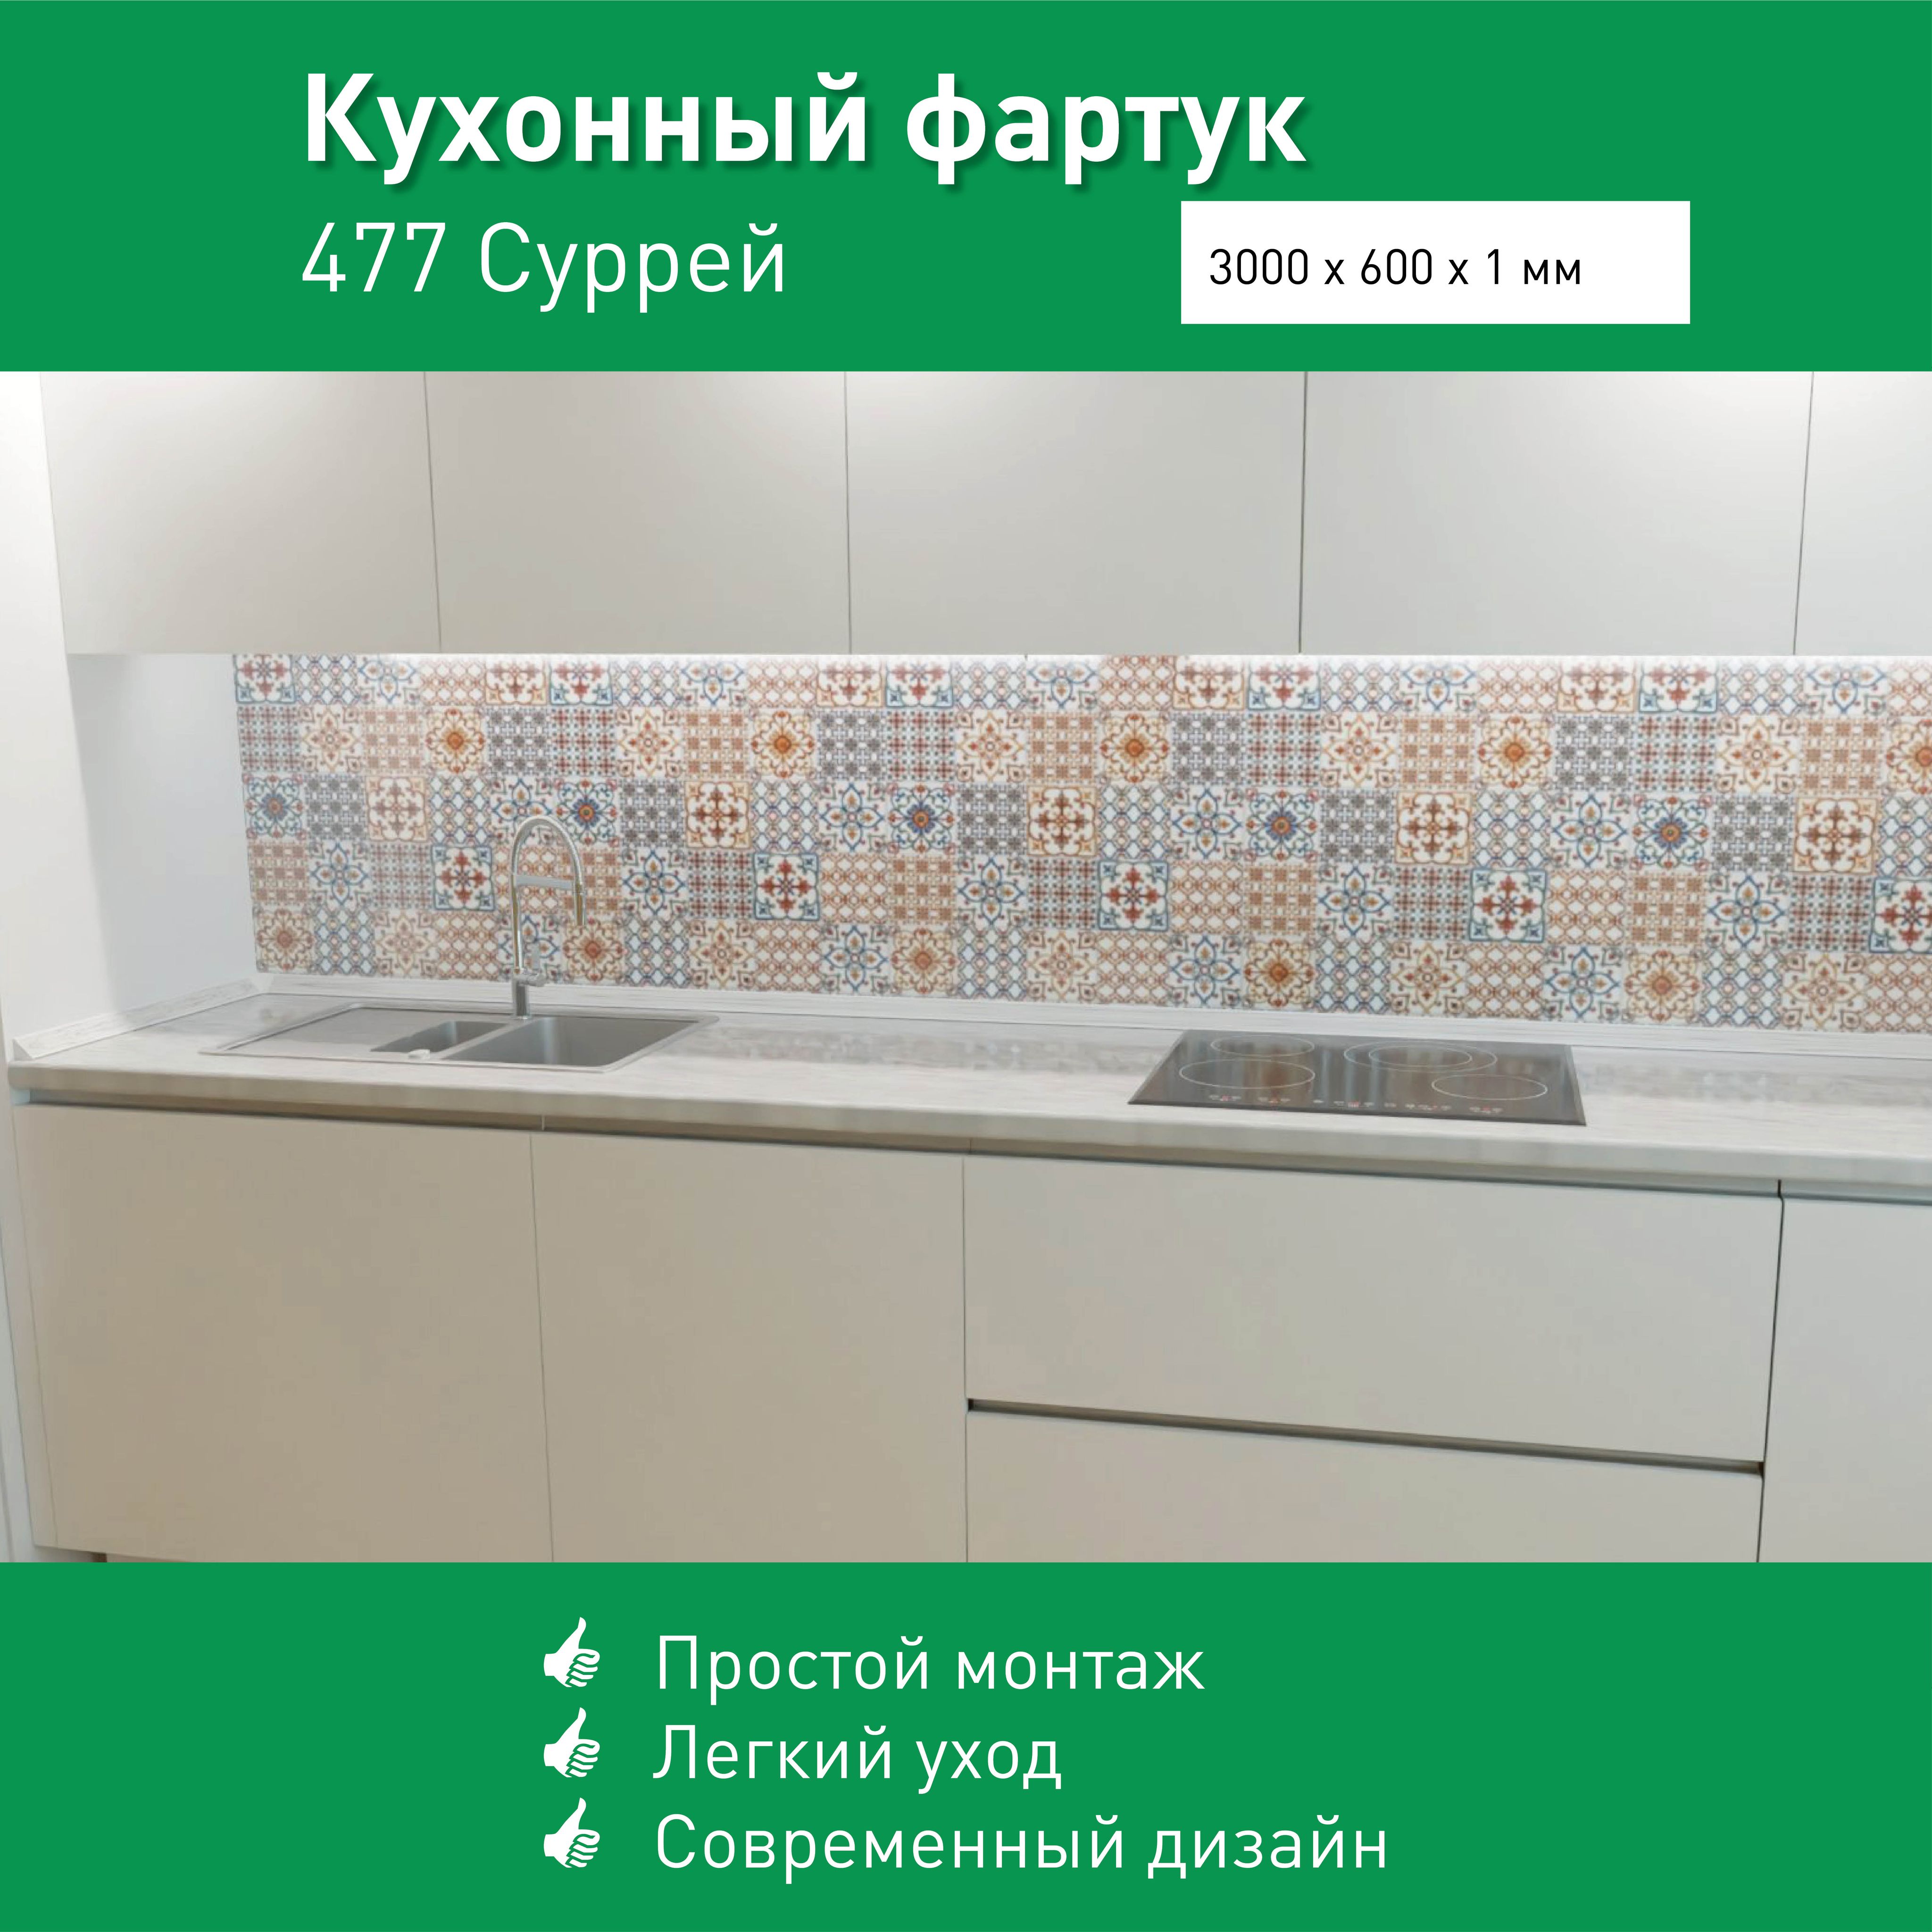 Дешевые фартуки для кухни над рабочей зоной - sirius-clean.ru